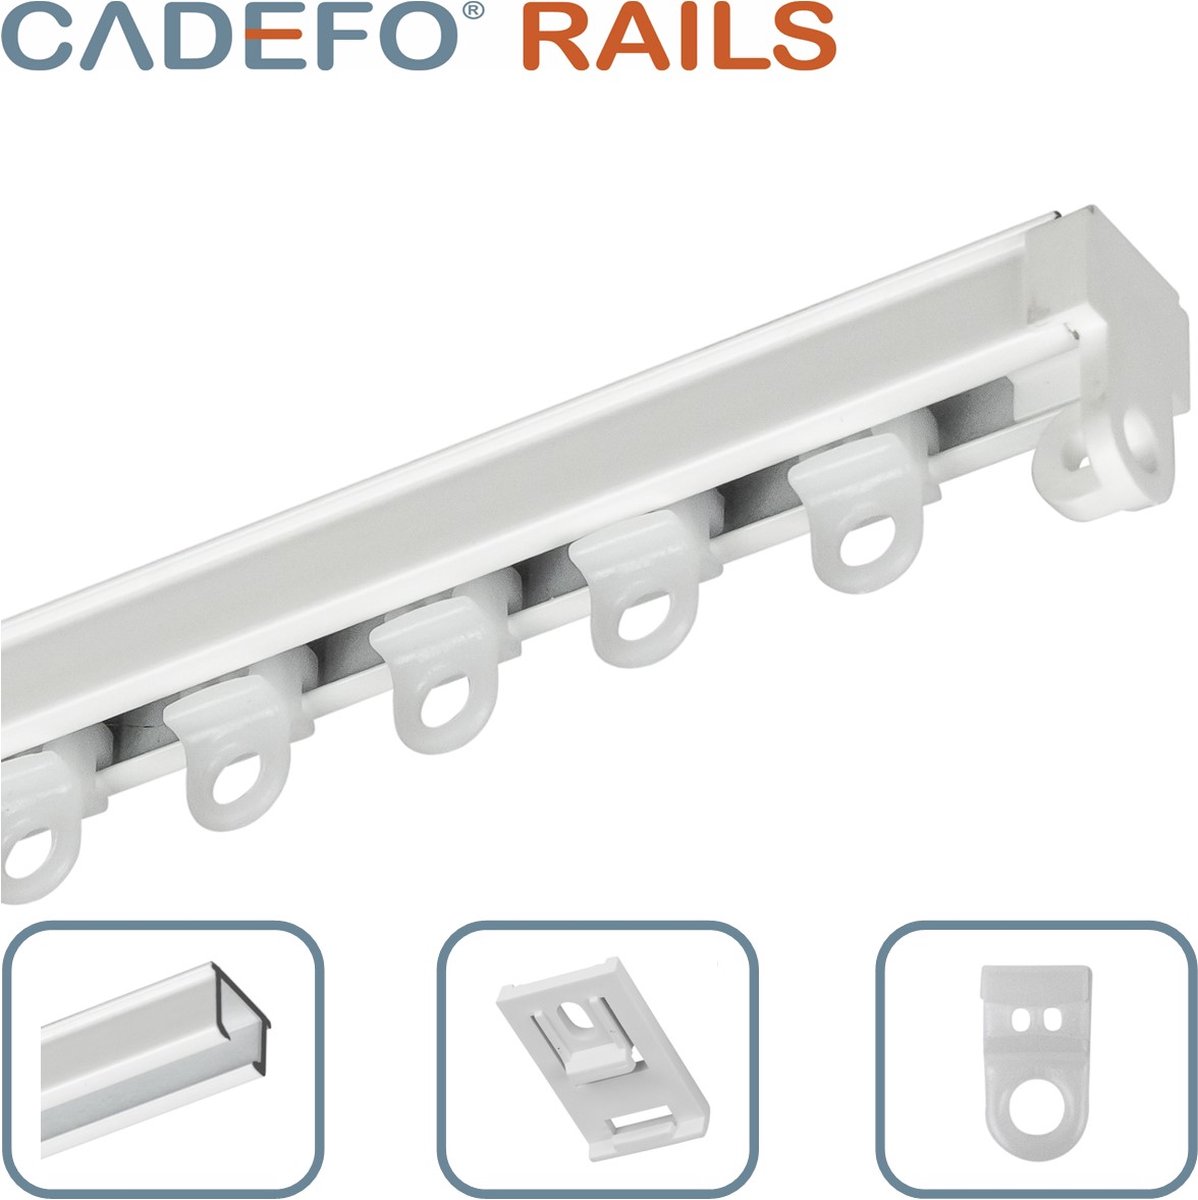 CADEFO RAILS (351 - 400 cm) Gordijnrails - Compleet op maat! - UIT 1 STUK - Leverbaar tot 6 meter - Plafondbevestiging - Lengte 373 cm